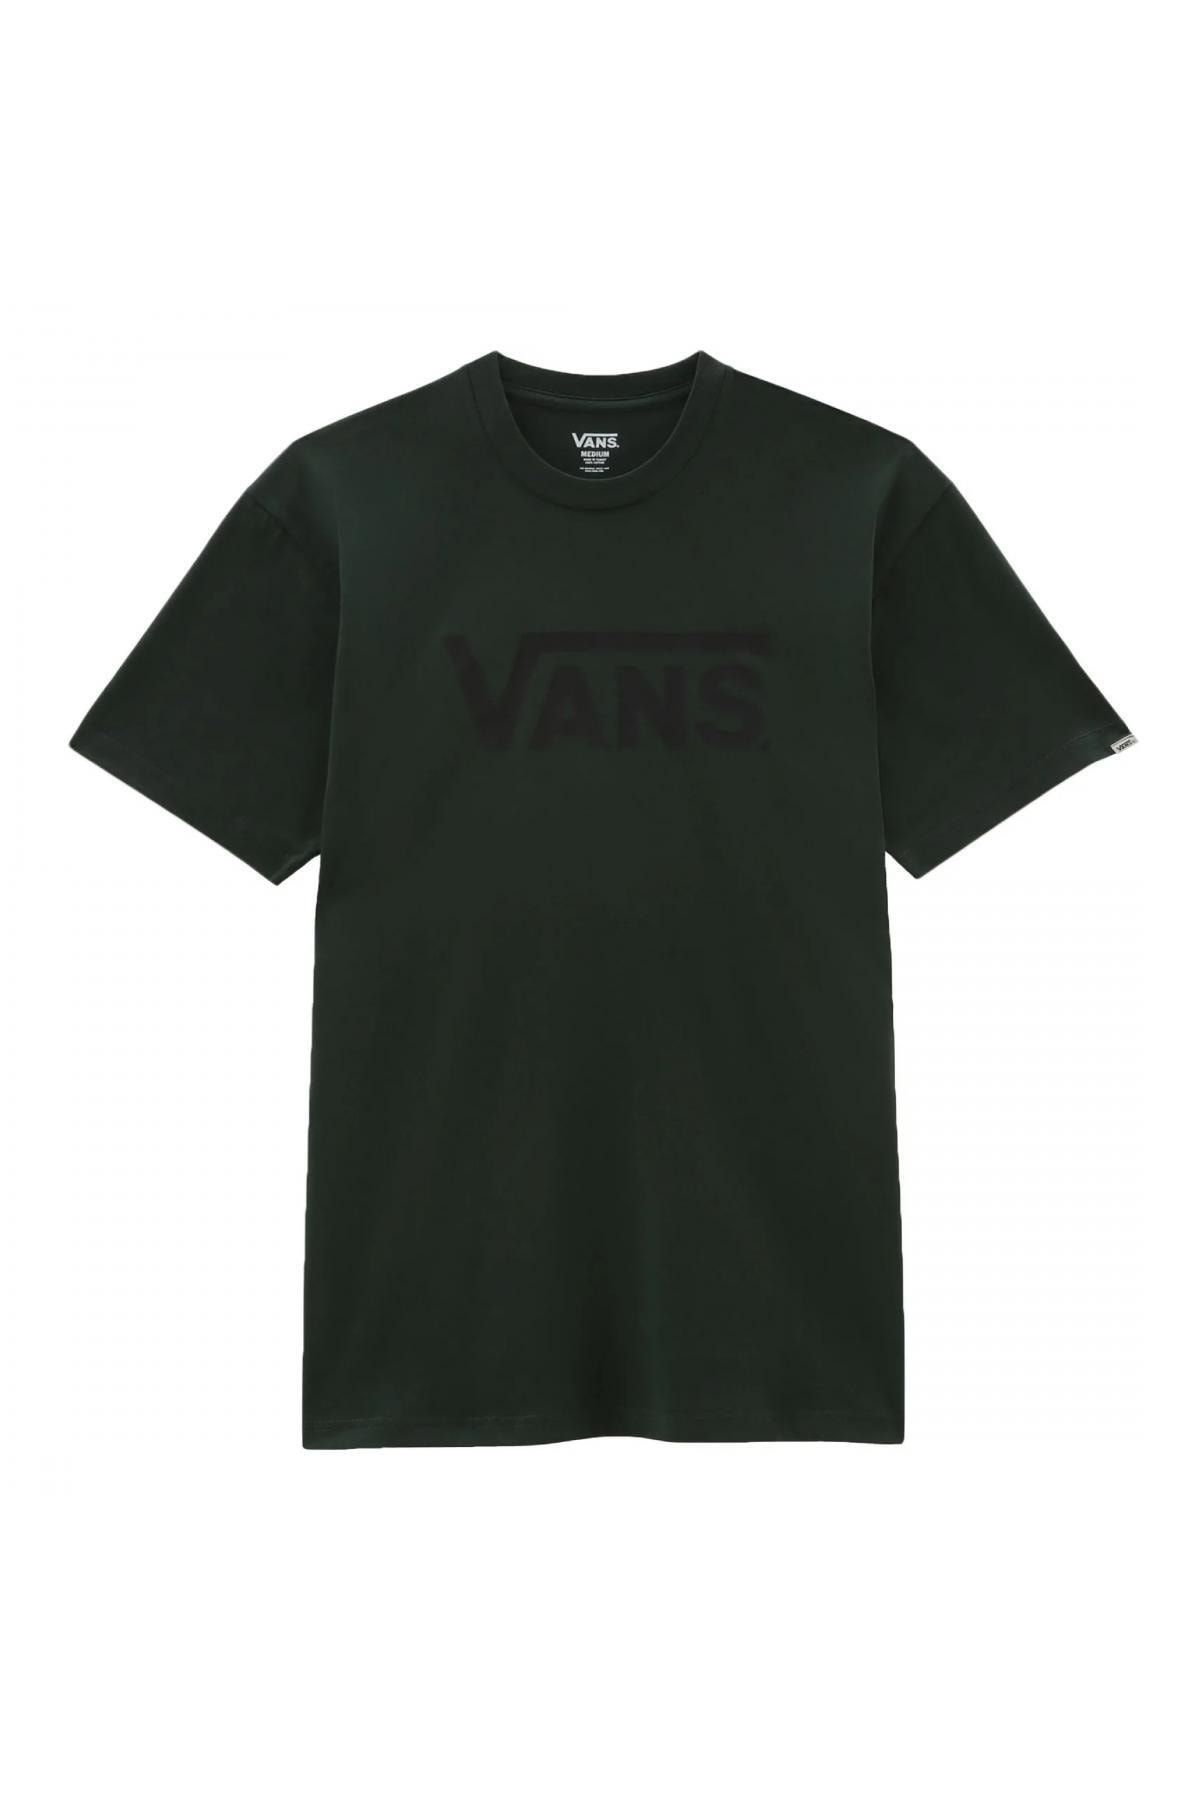 Vans Vn0a7y46 Classic Tee-b Siyah Unisex T-shirt